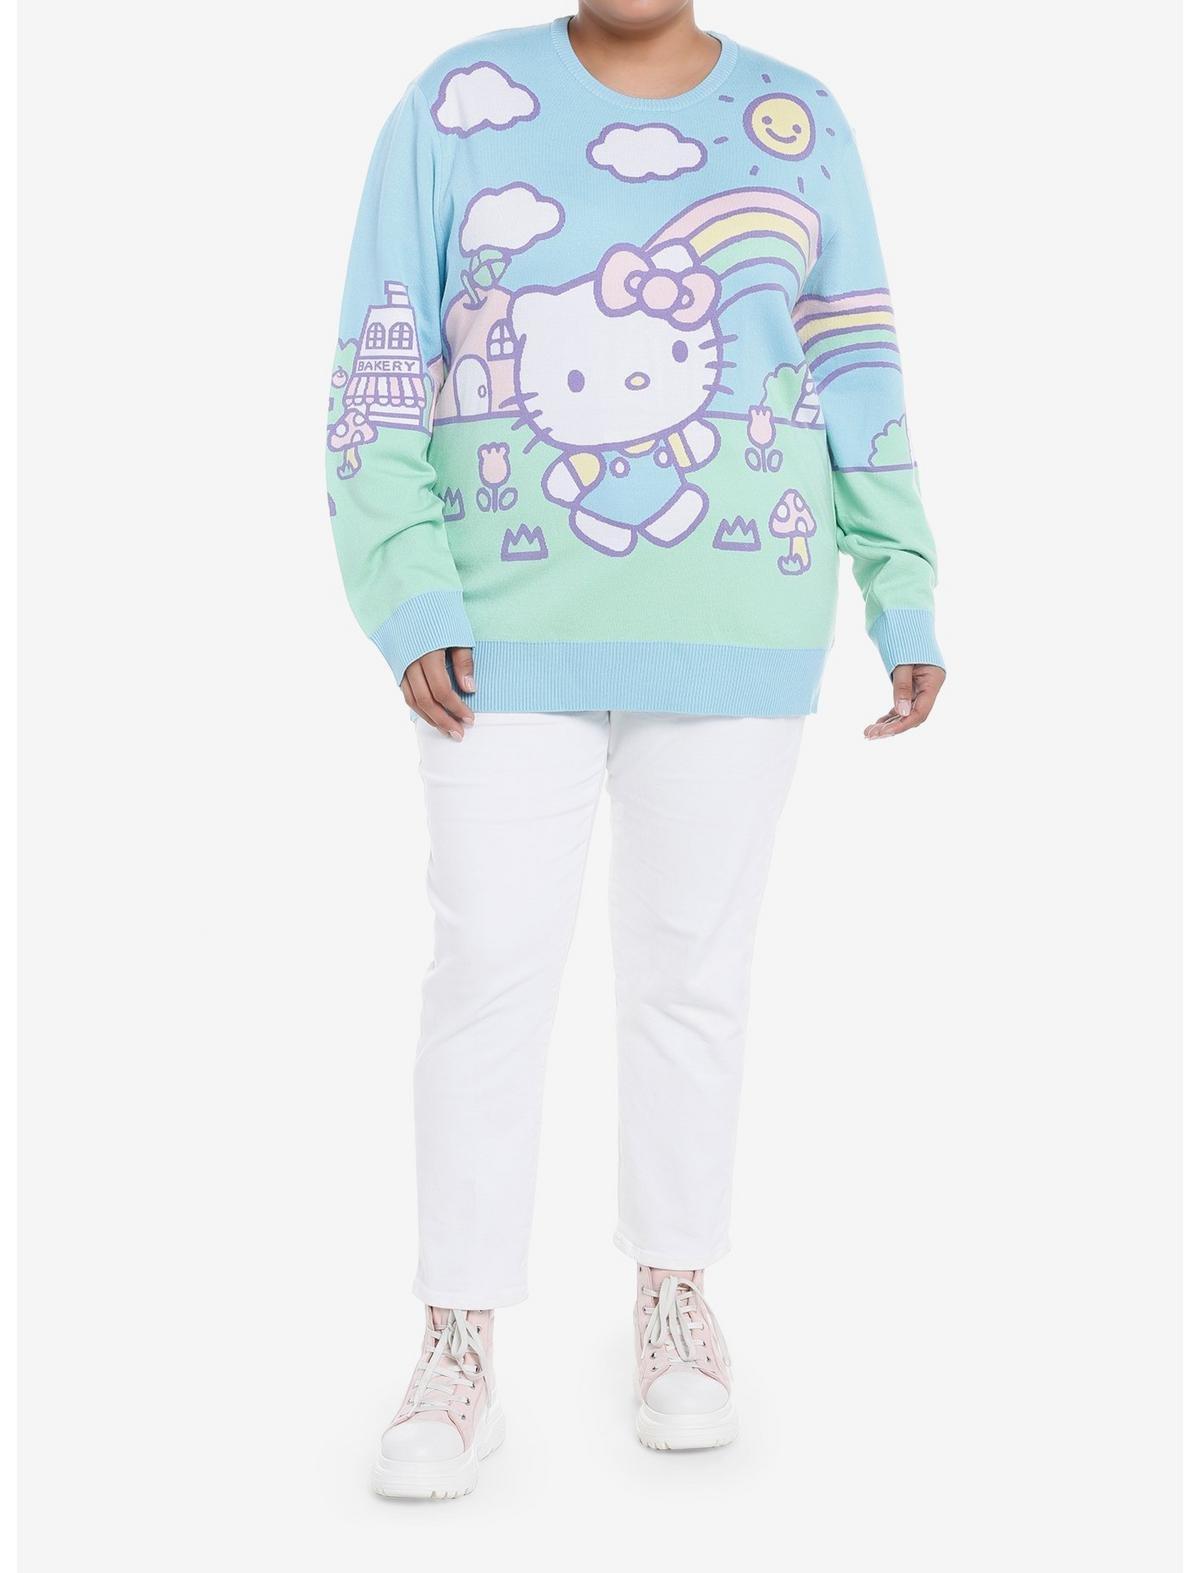 Hello Kitty Jumbo Art Pastel Knit Sweater Plus Size, MULTI, alternate